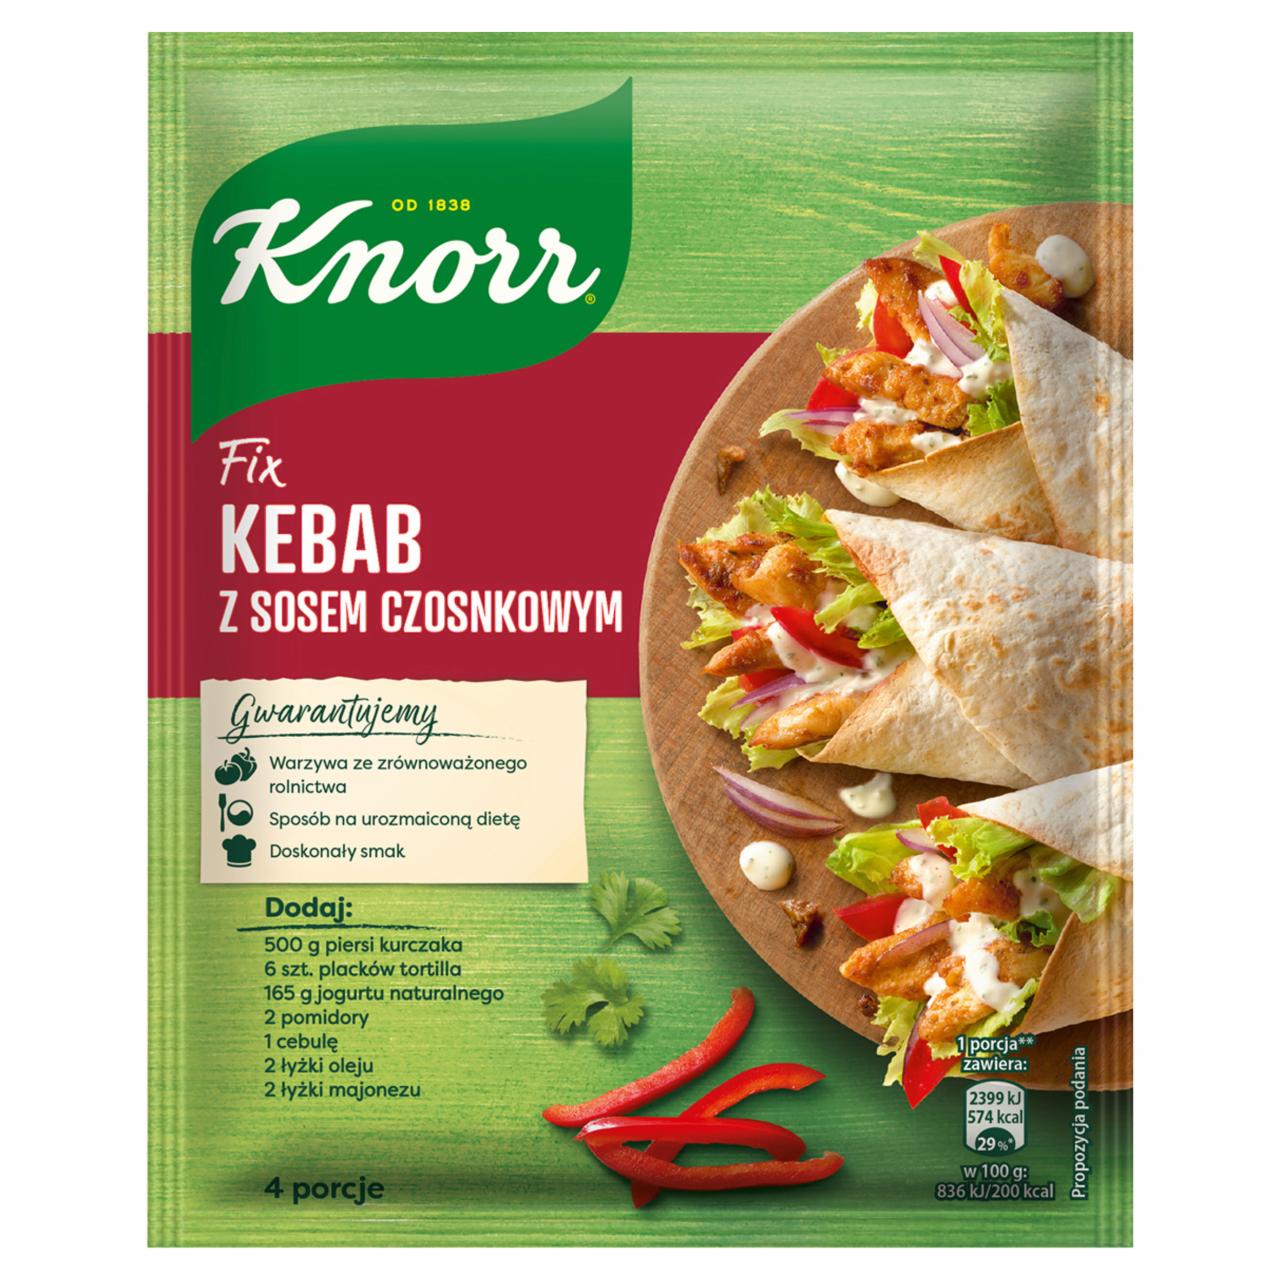 Zdjęcia - Knorr Fix kebab z sosem czosnkowym 40 g